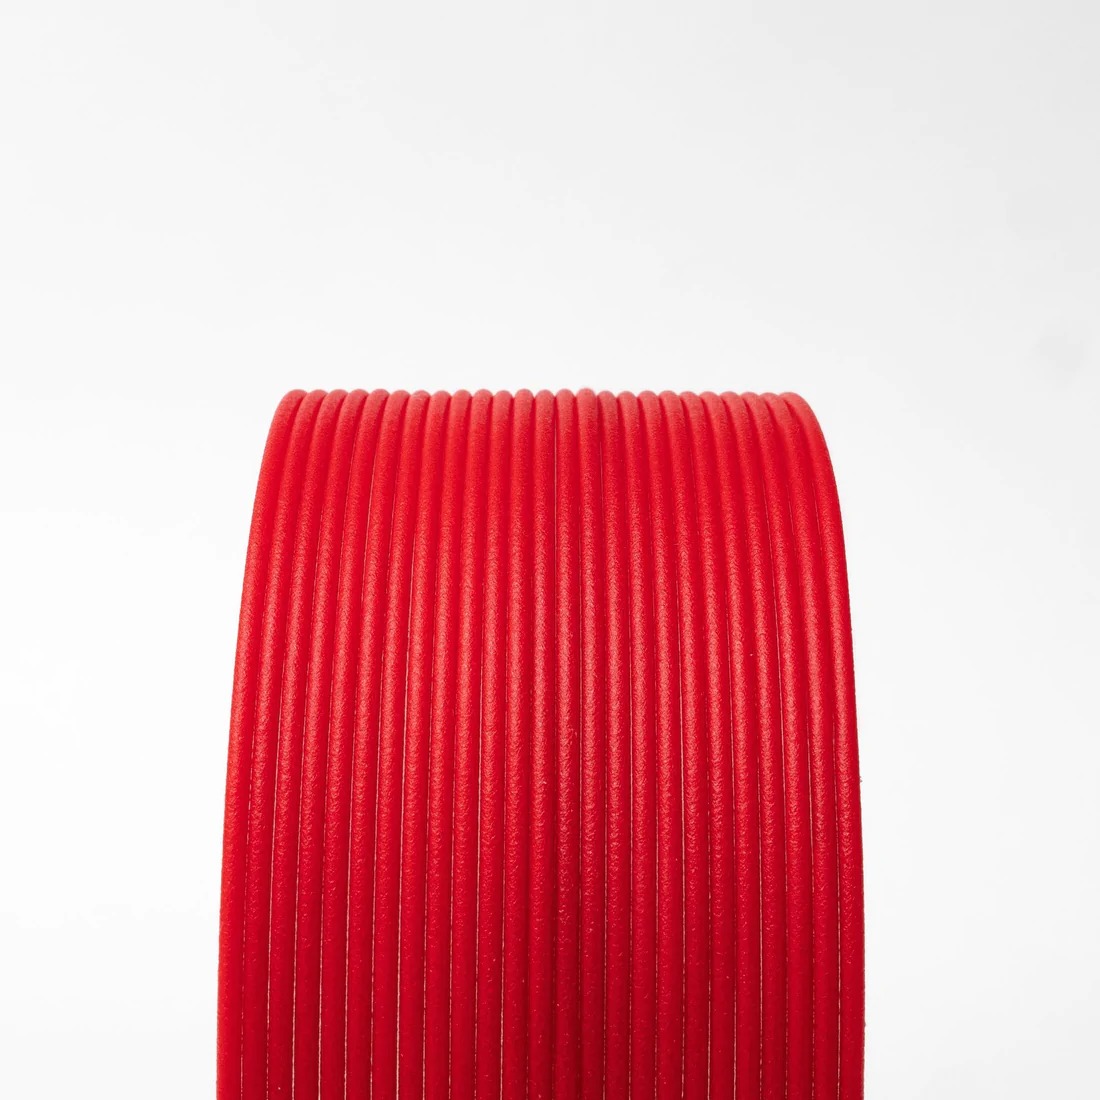 High Temp PLA Matte Fibre Red 2.85mm 3D printing Filament